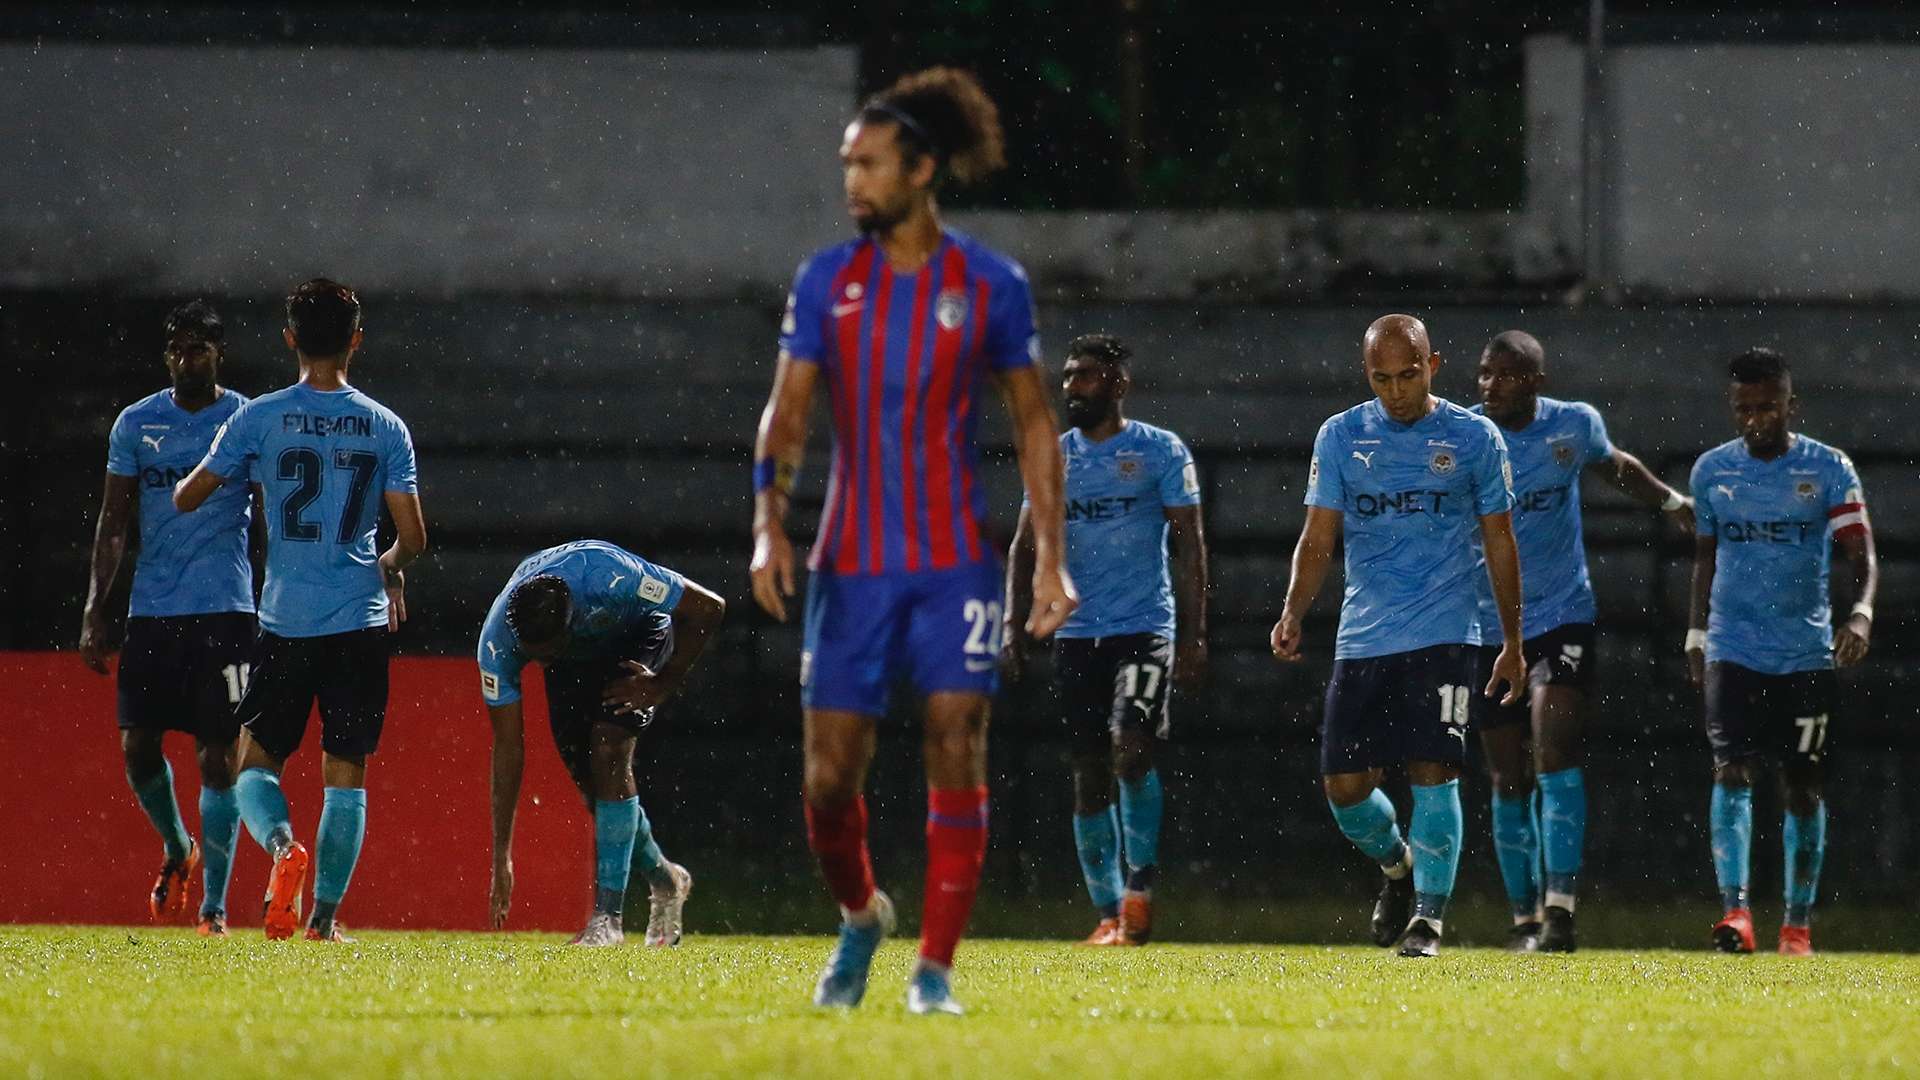 Petaling Jaya City FC v Johor Darul Ta'zim, Super League, 25 Sep 2020